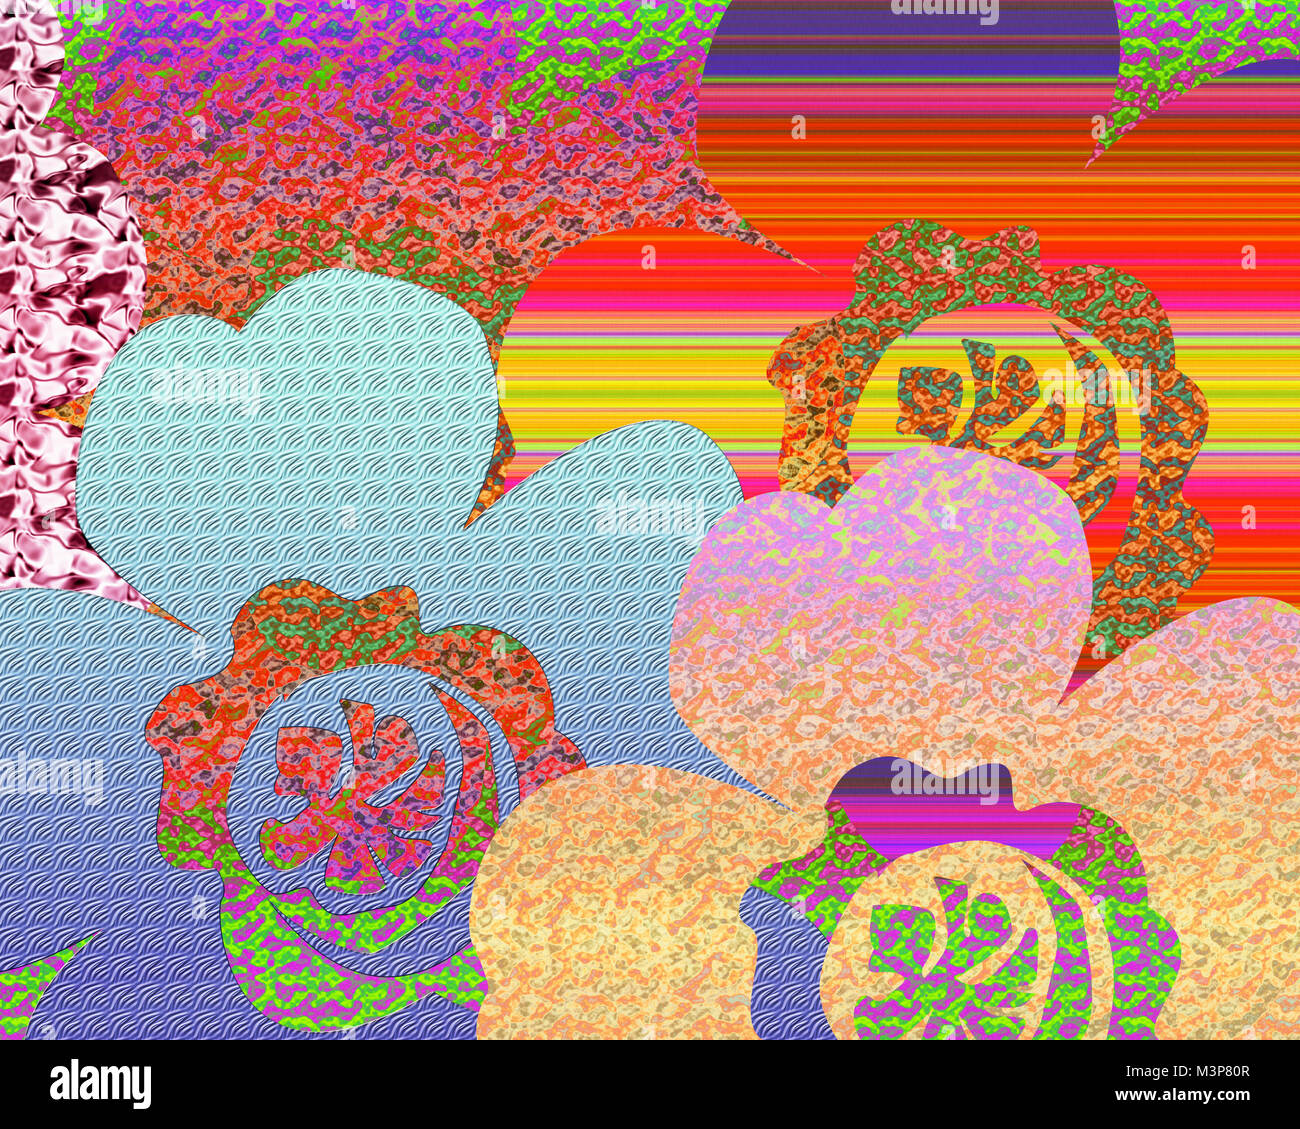 Resumen Antecedentes En bonitas flores de color pastel en diferentes patrones de texturas y colores Foto de stock